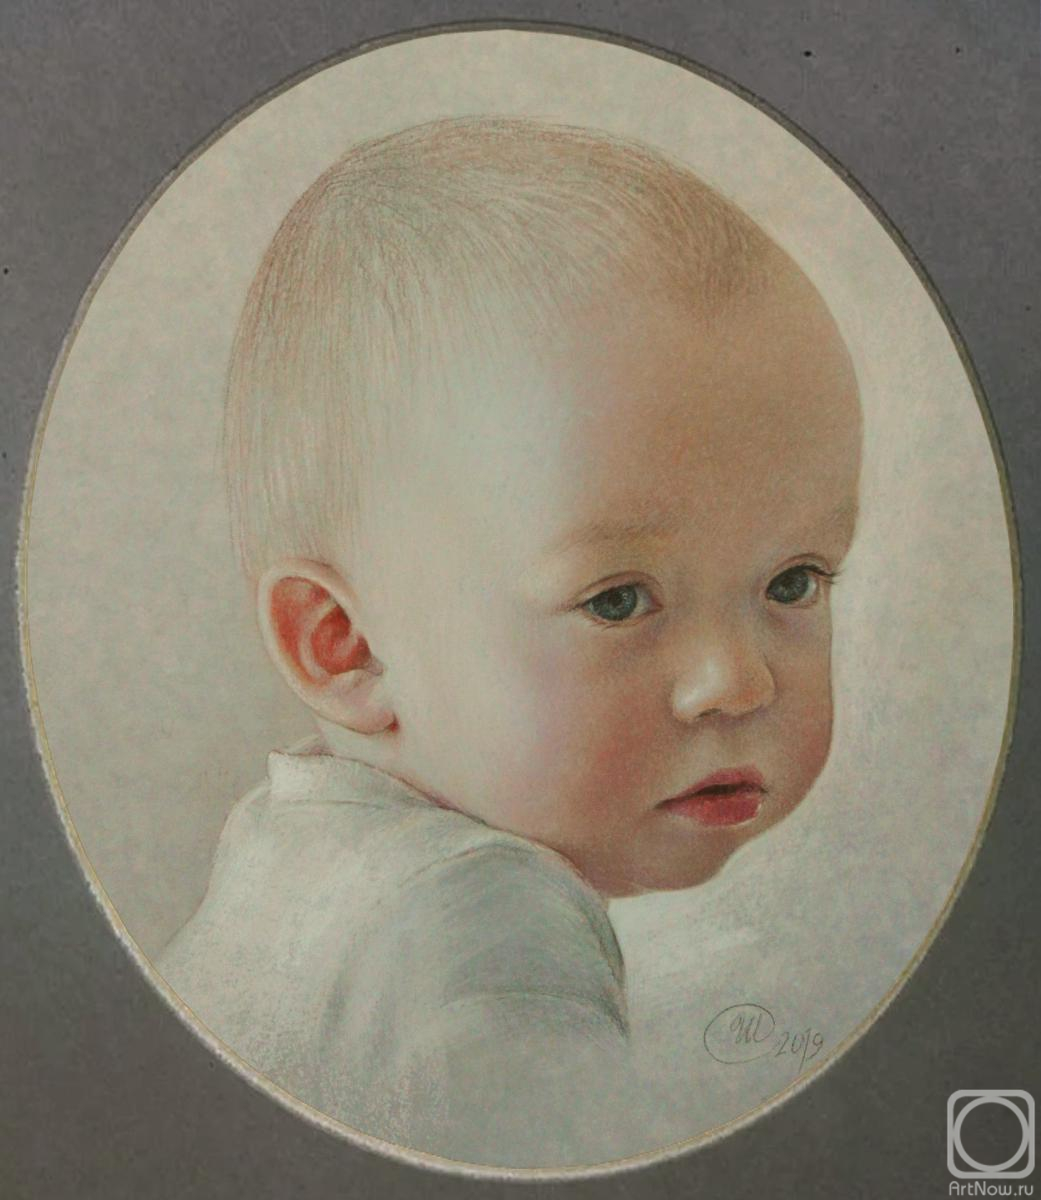 Shirokova Svetlana. Children's portrait